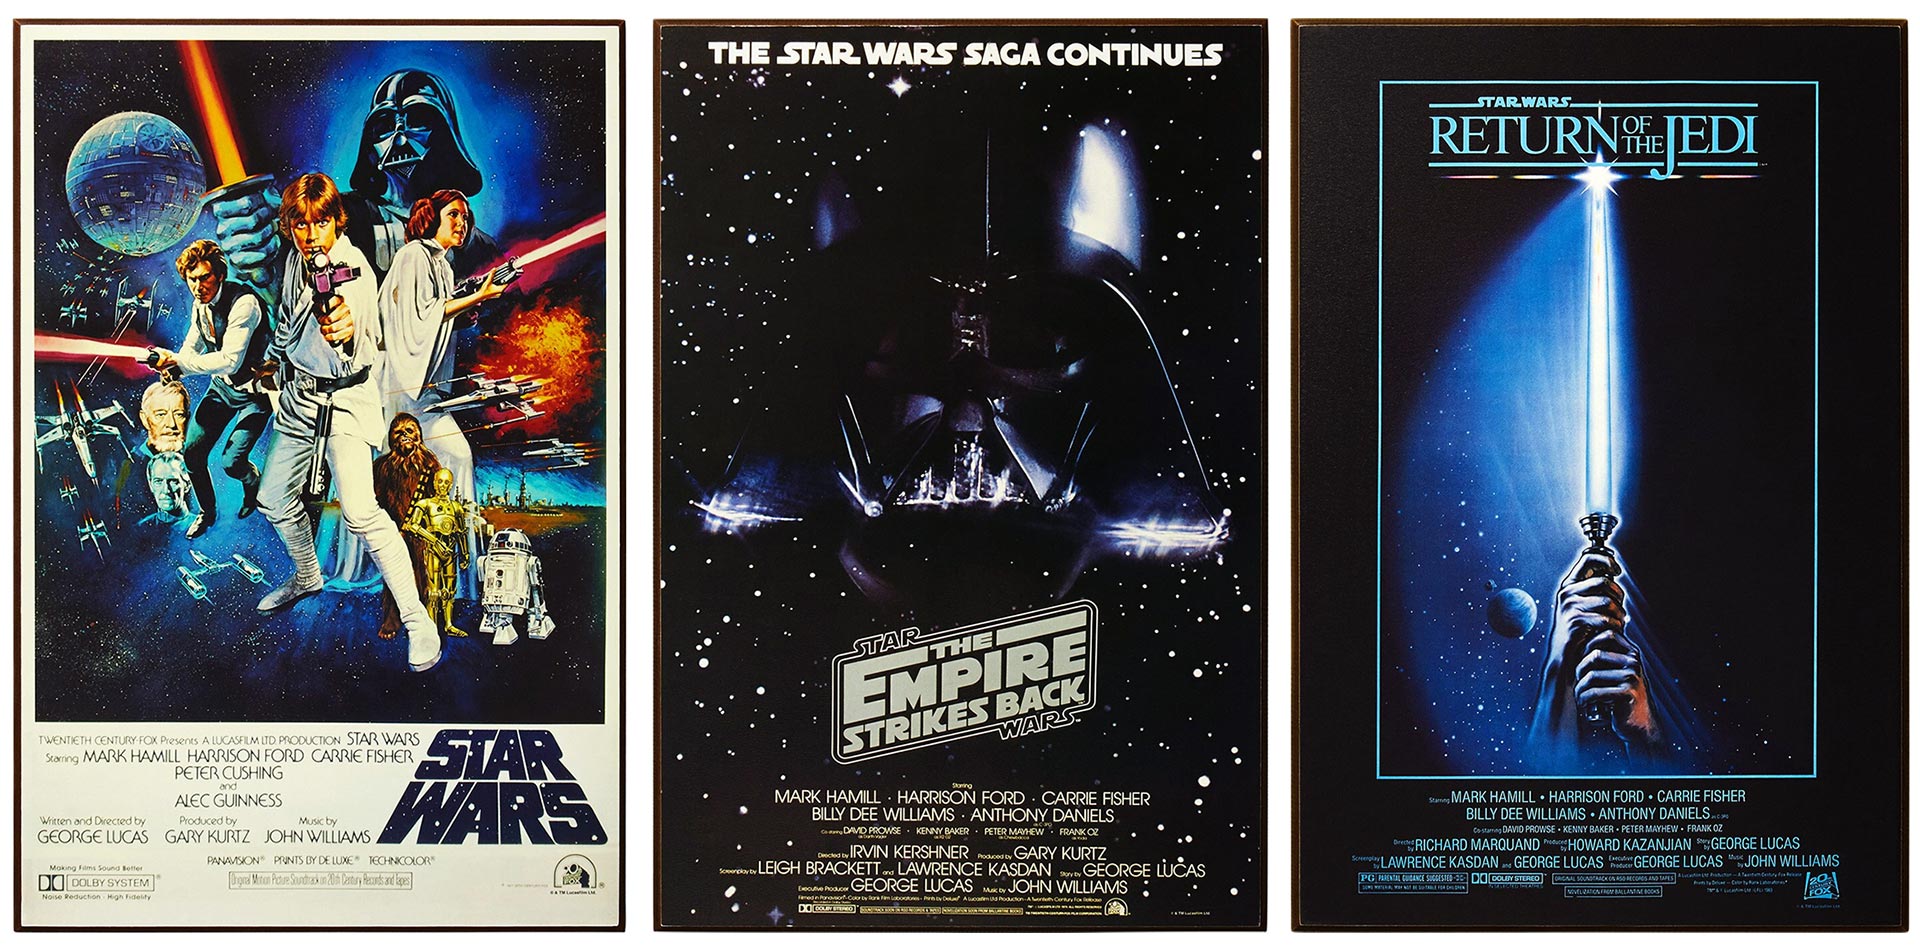 Original Star Wars Posters